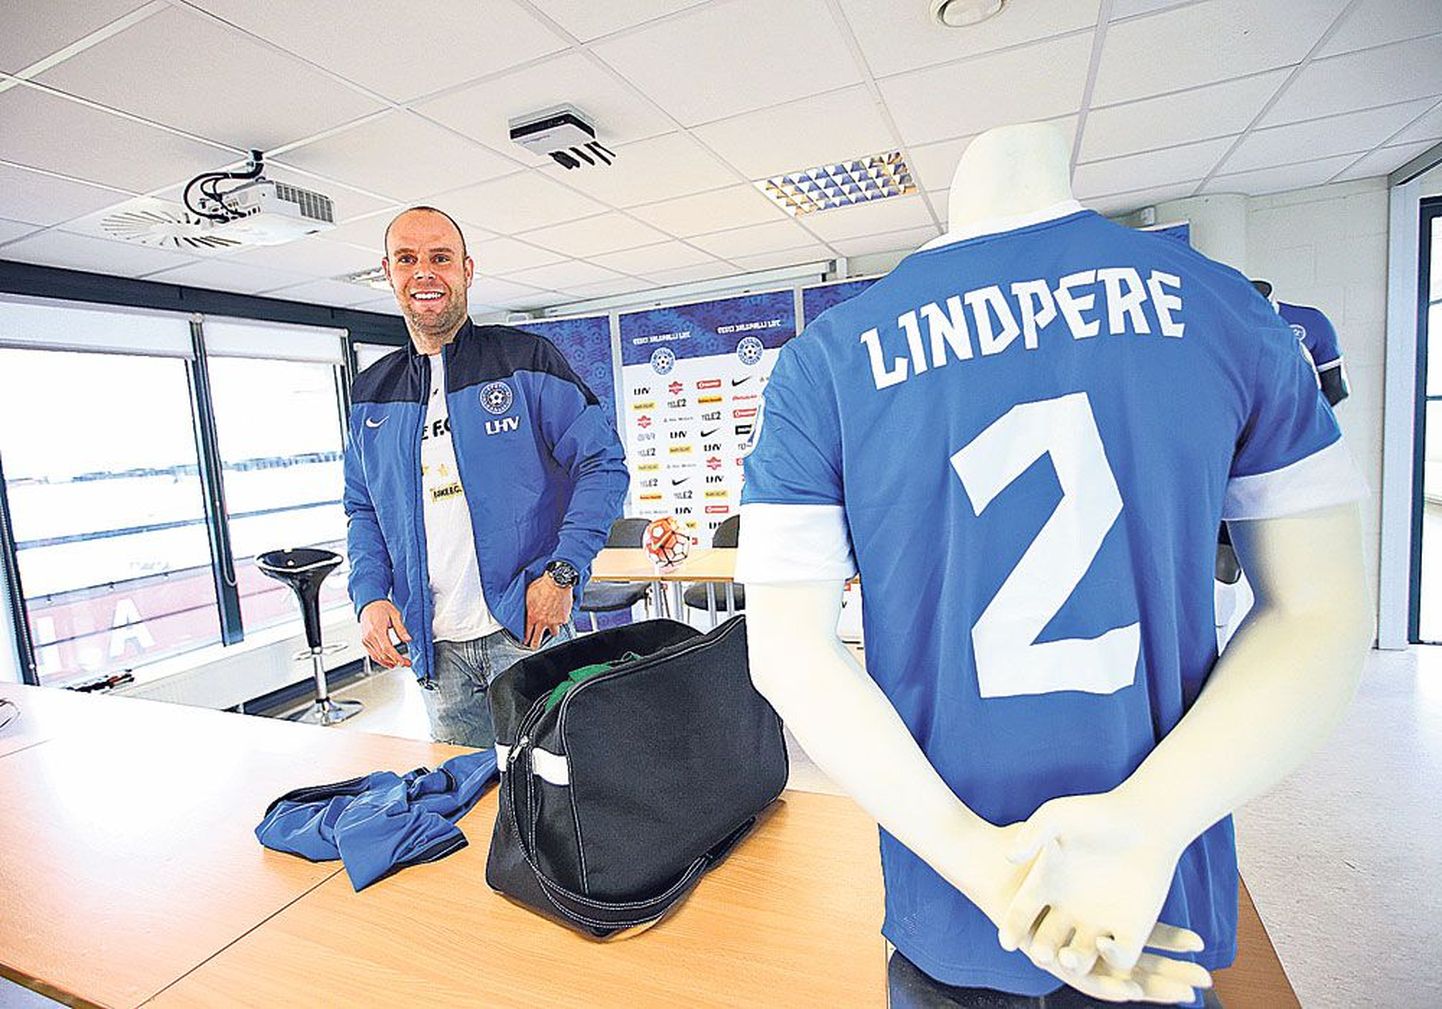 На пресс-конференции, состоявшейся в четверг, Йоэль Линдпере был весел, так как за спиной у него успешная карьера. Своего последнего матча футболист ждет с нетерпением.